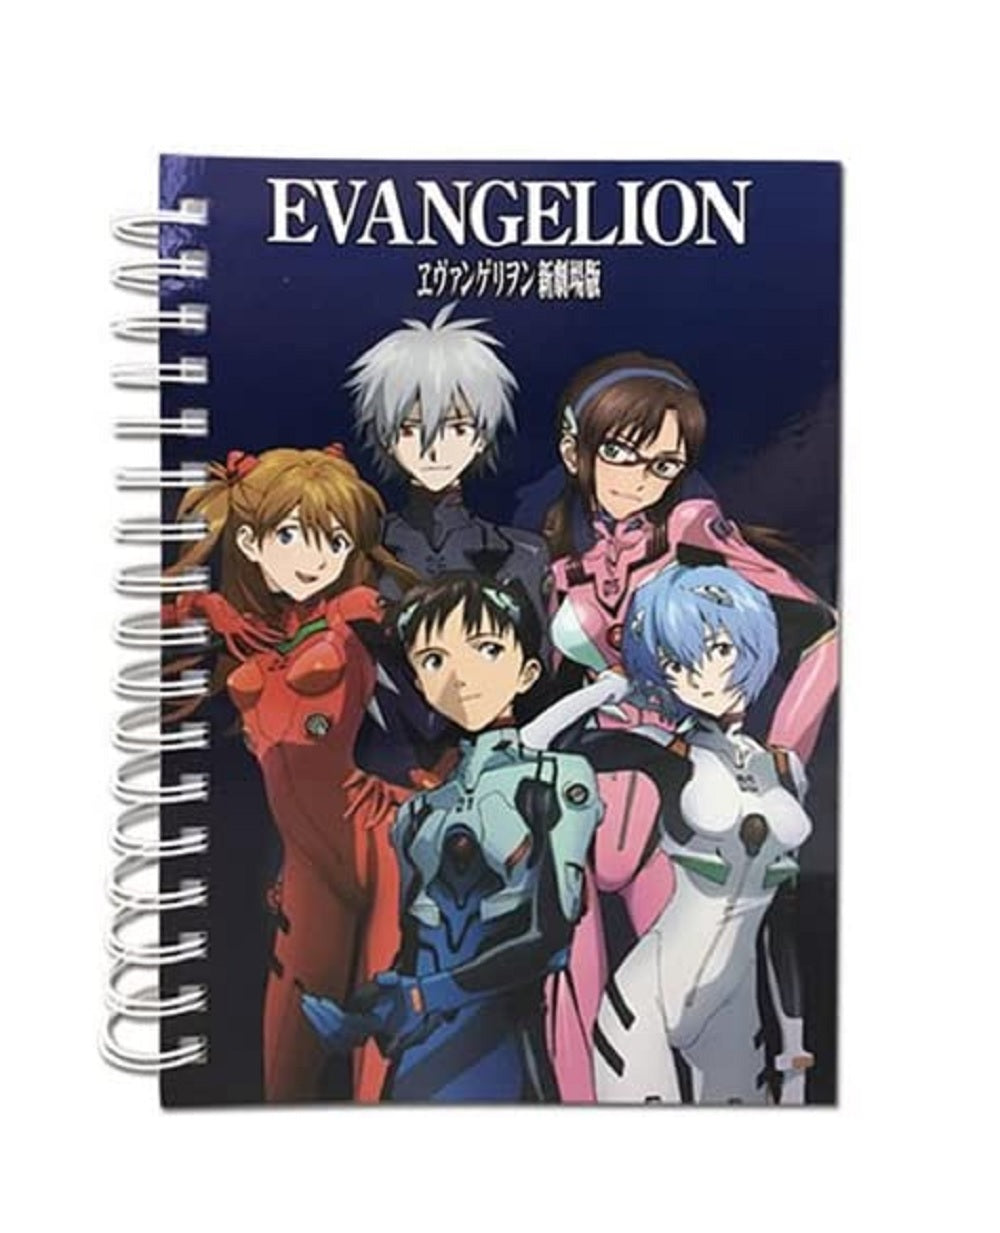 Neon Genesis Evangelion Group Anime Spiral Notebook